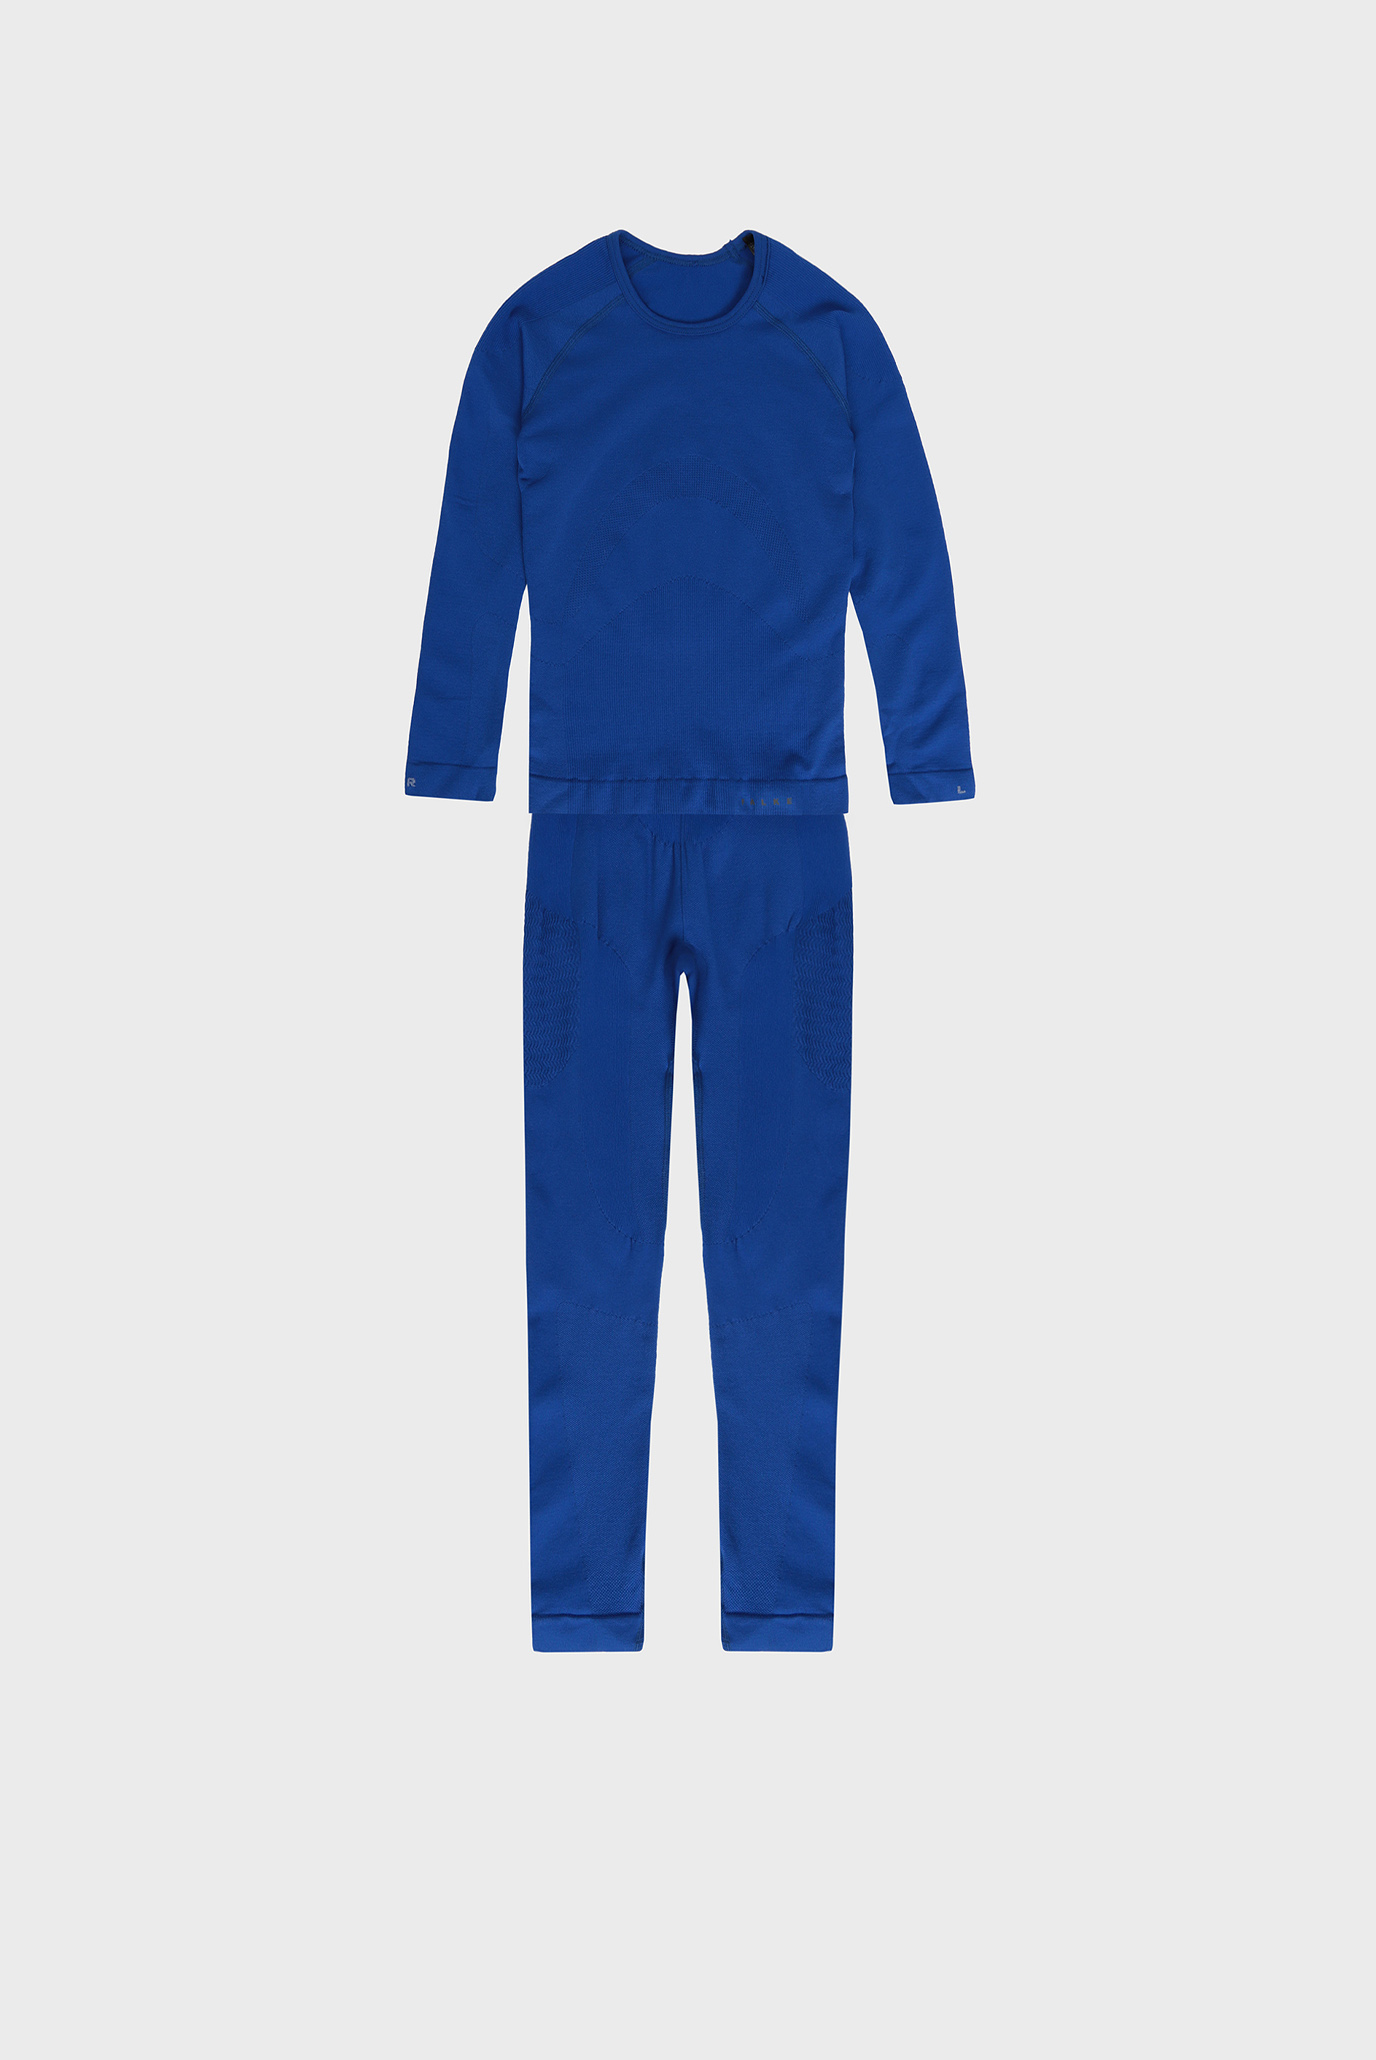 Детский синий комплект термобелья (лонгслив, брюки) Maximum Warm 1